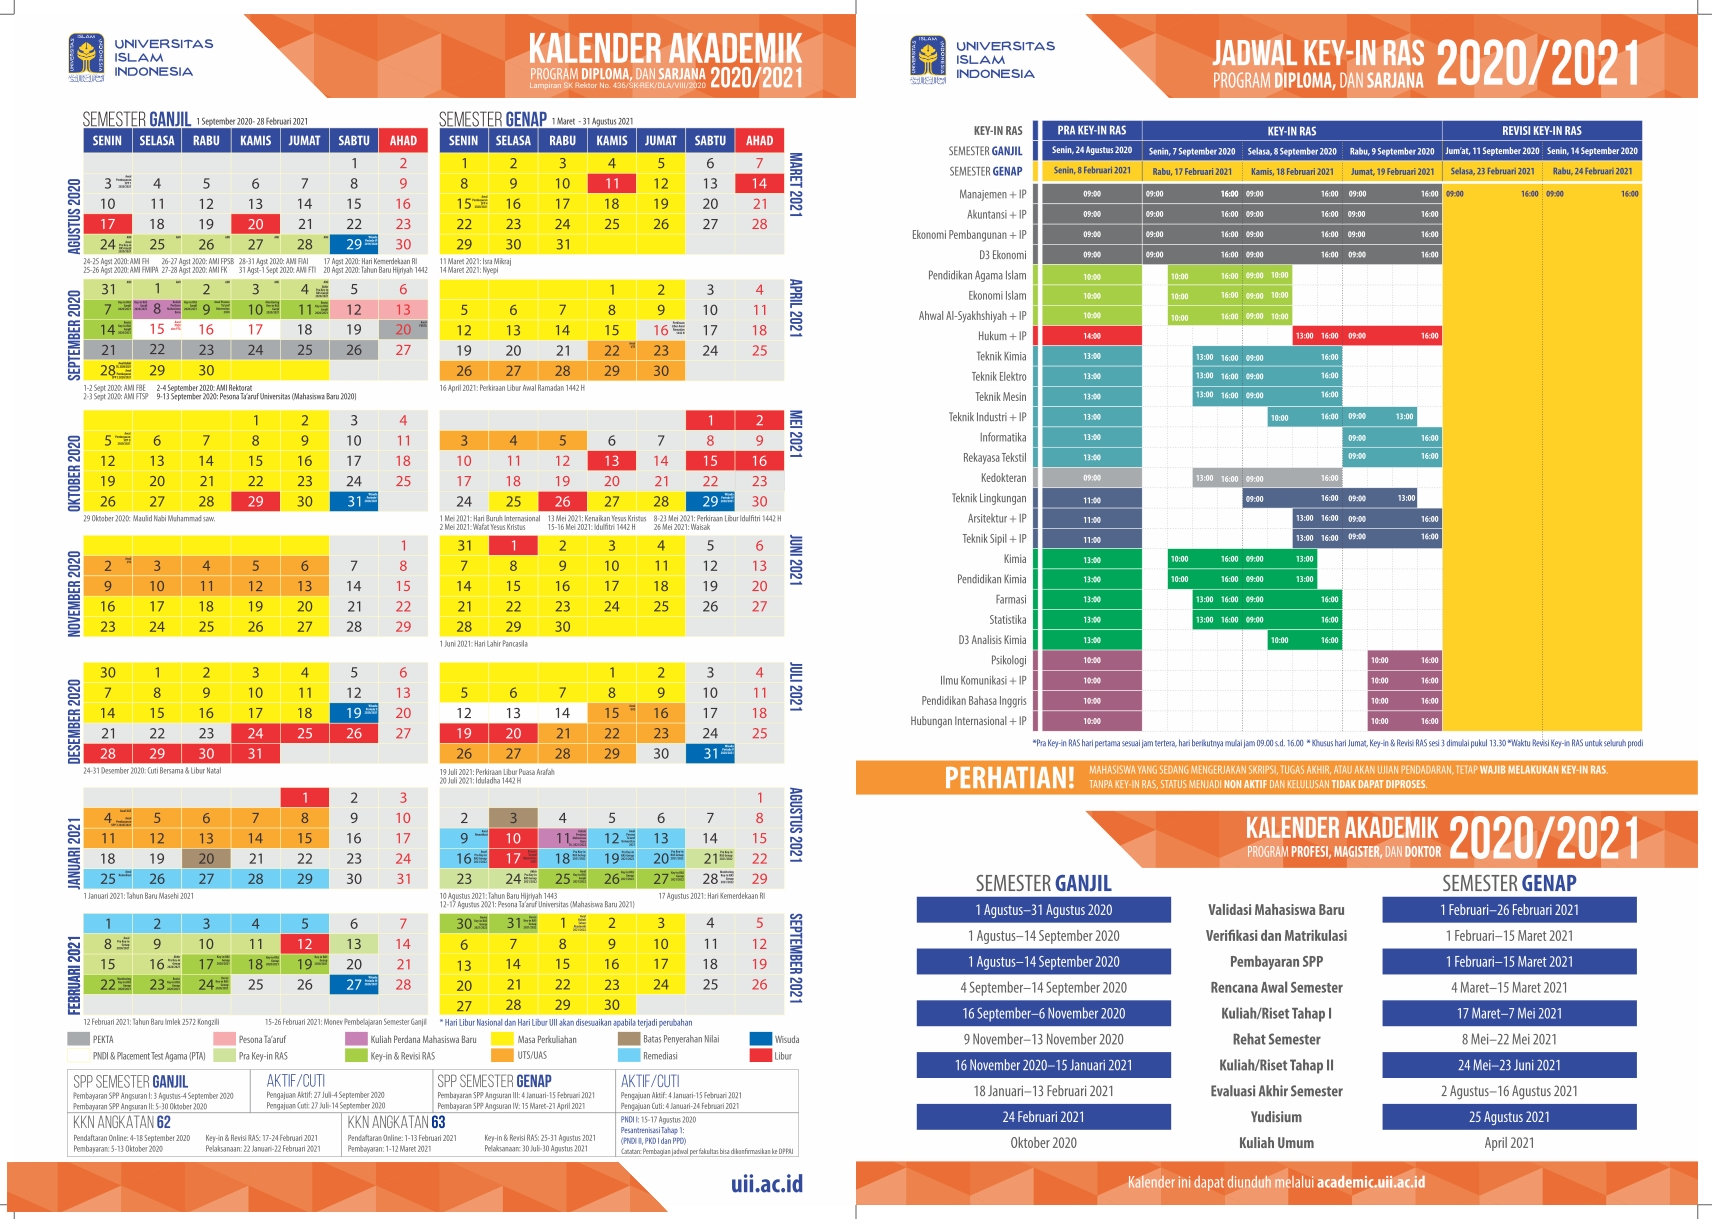 Kalender akademik uii 2021